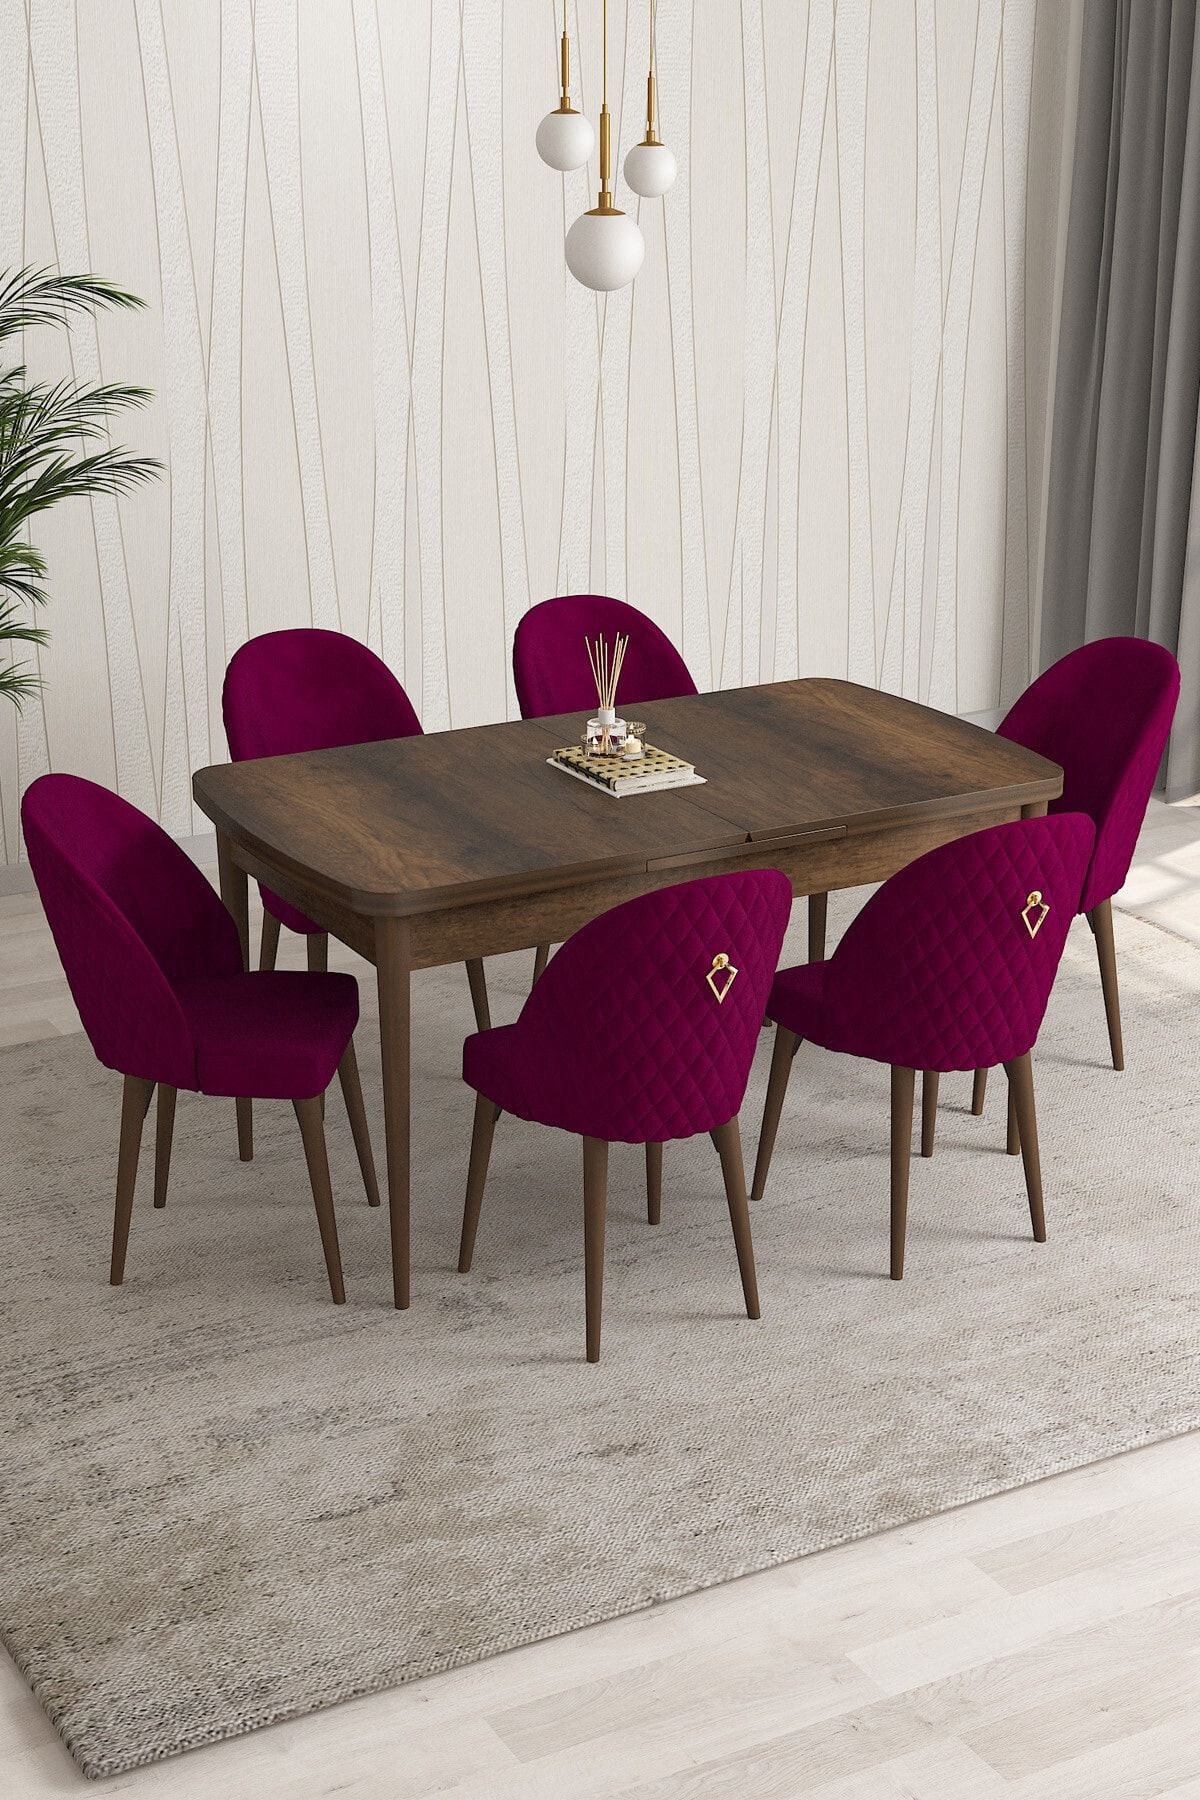 Rovena Modica Barok Desen 80x132 Açılabilir Yemek Masası Takımı 6 Adet Sandalye